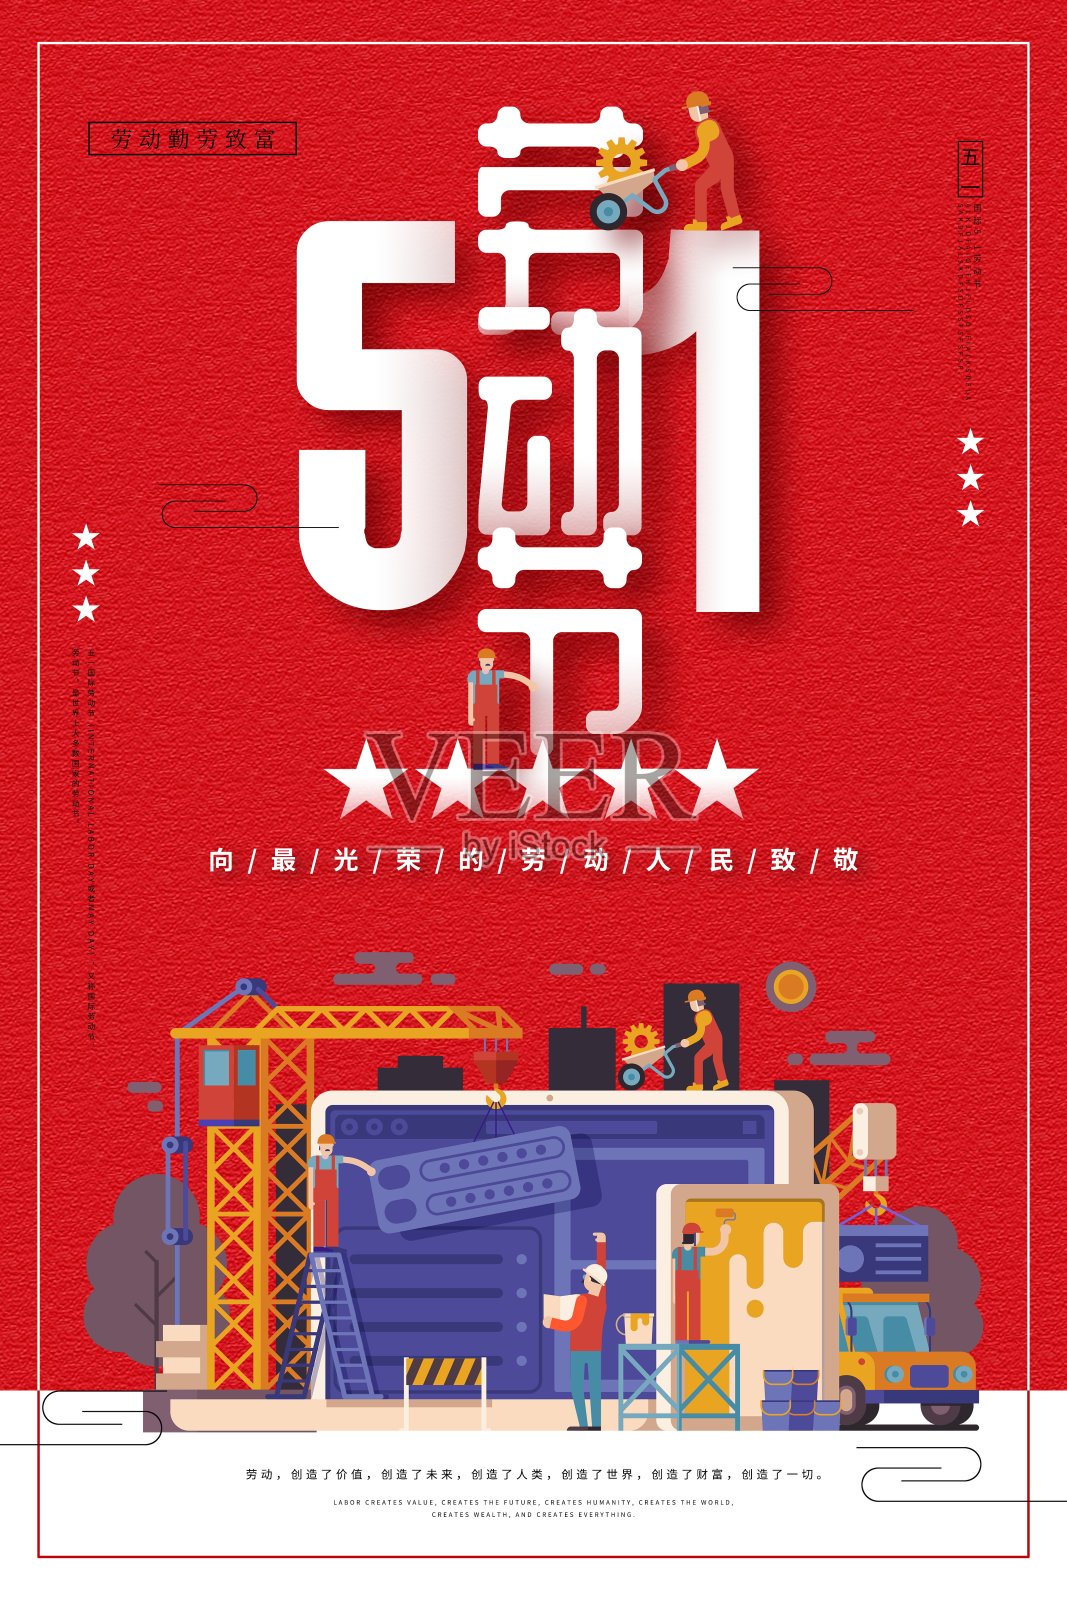 时尚51劳动节节日海报设计模板素材